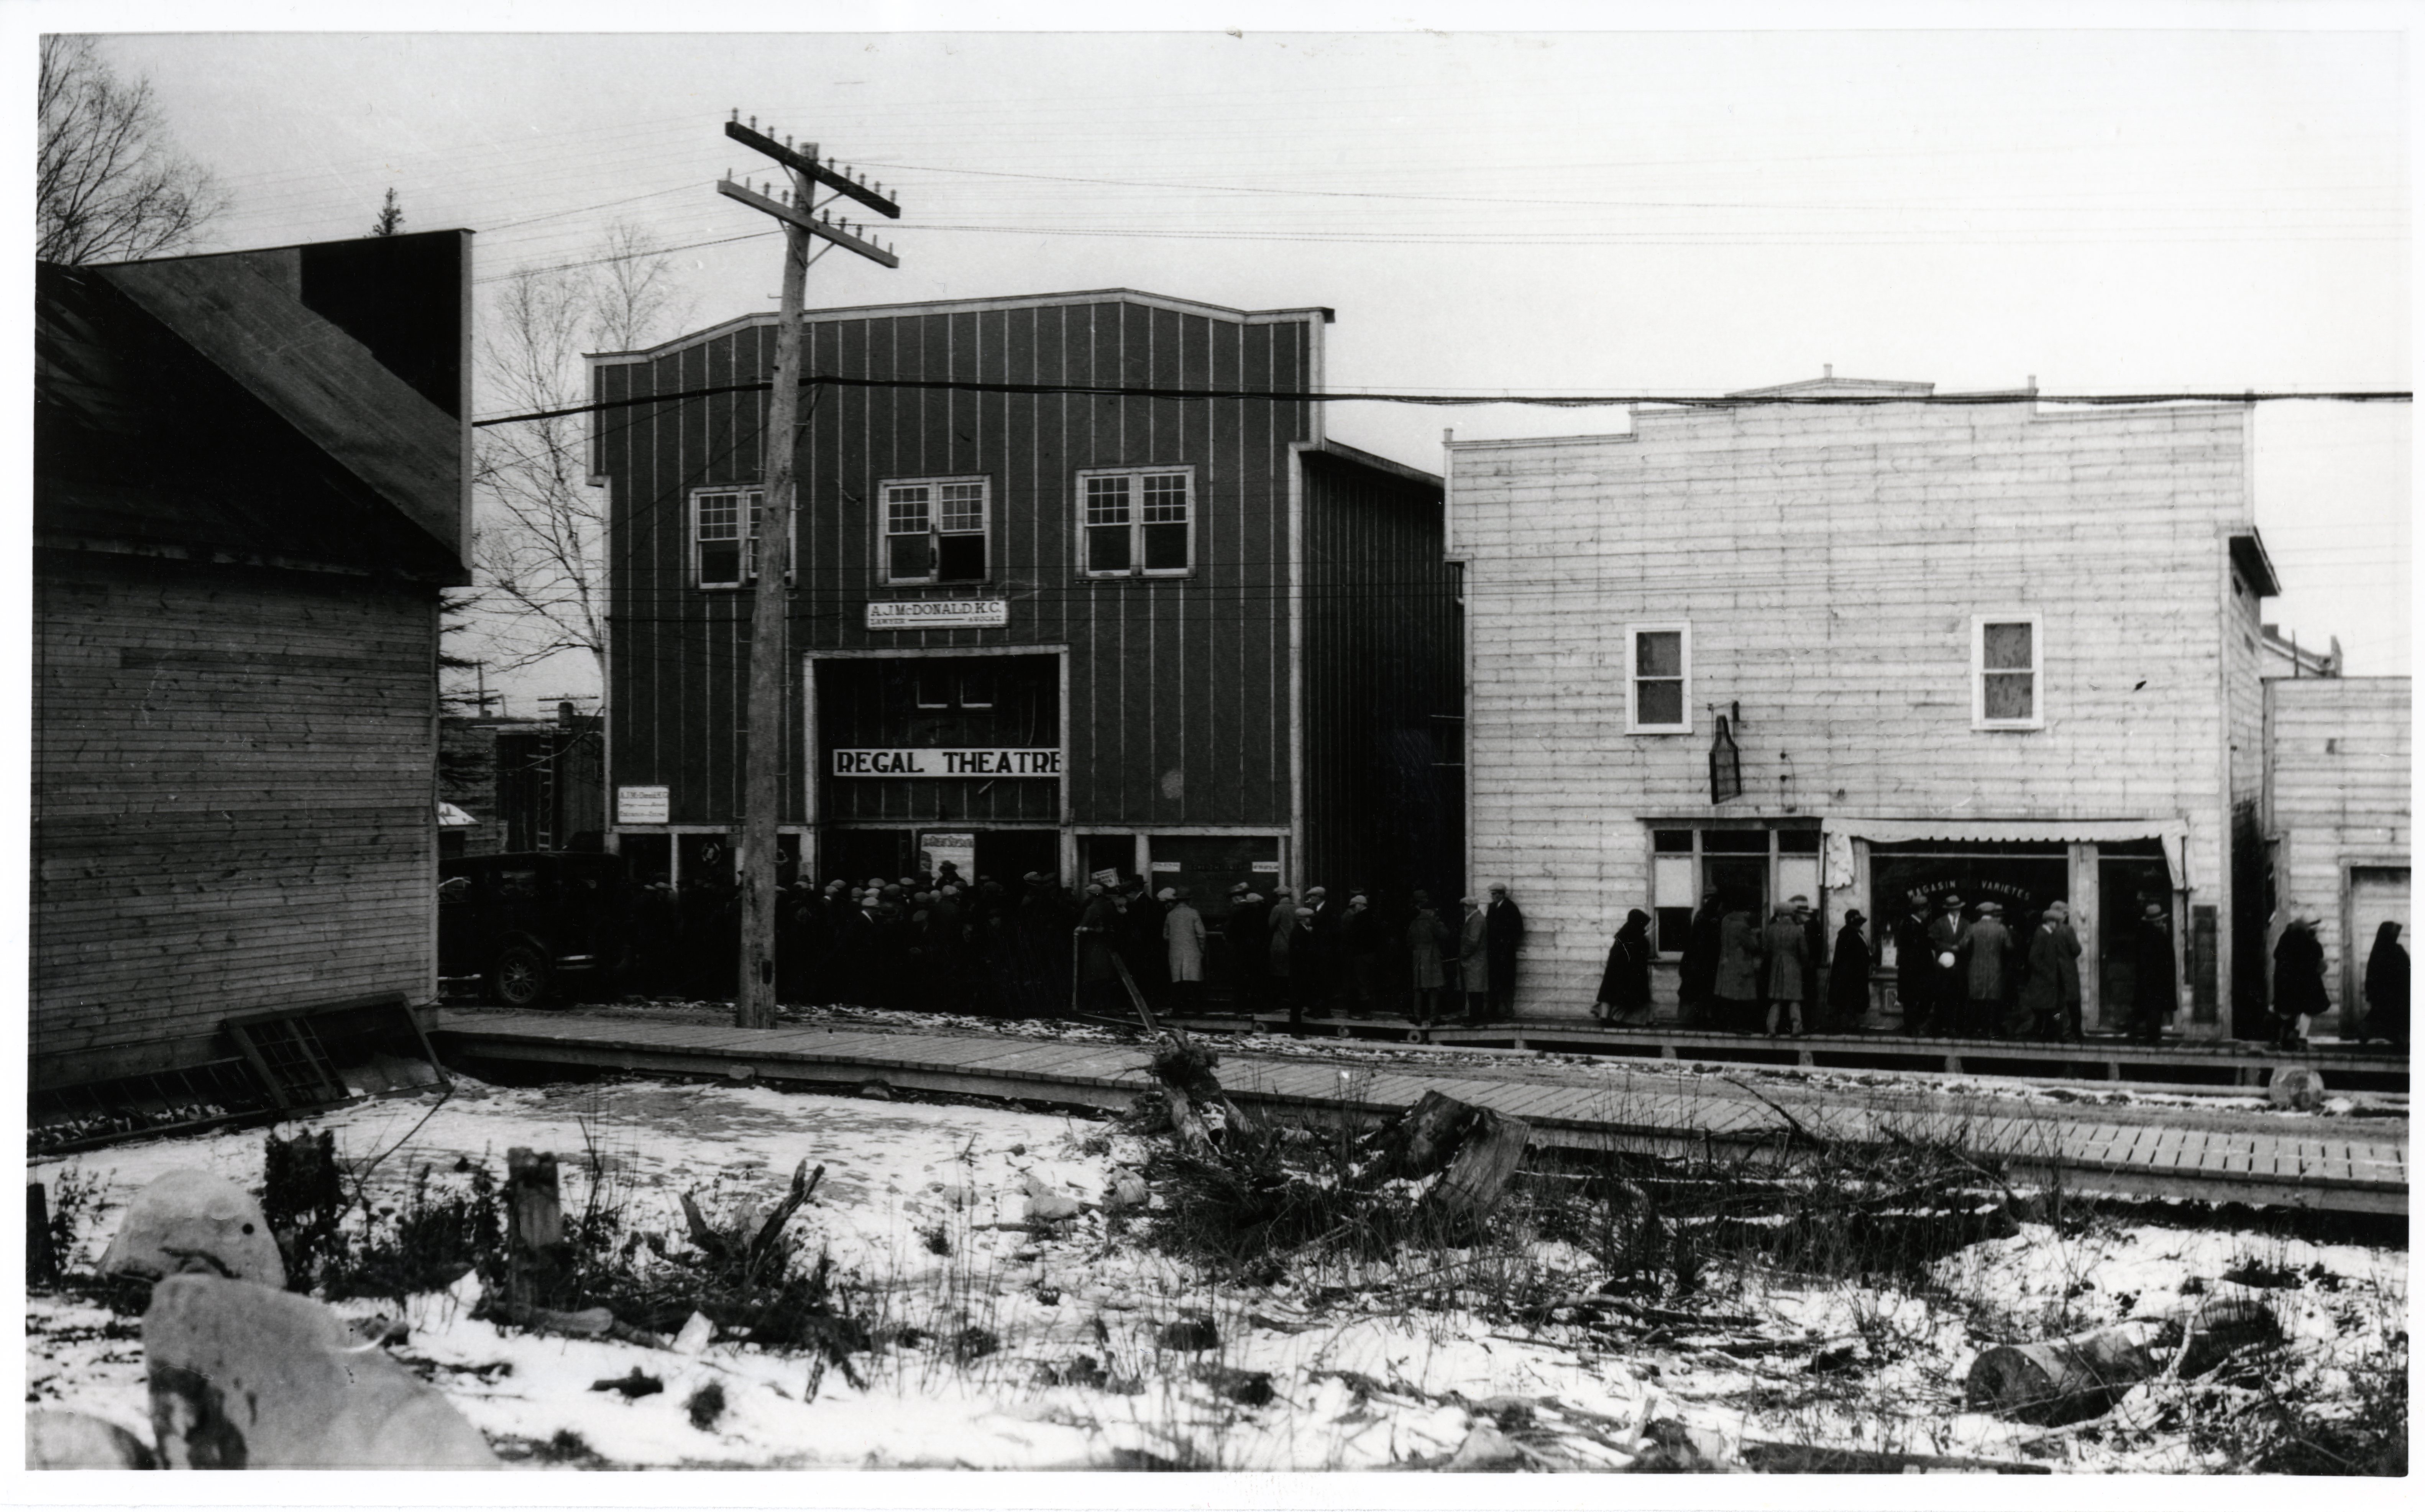 Photographie en noir et blanc de deux bâtiments avec des façades Boomtowns, dont un qui a une affiche Regal Theatre. Une foule attend sur le trottoir de bois devant l’édifice.